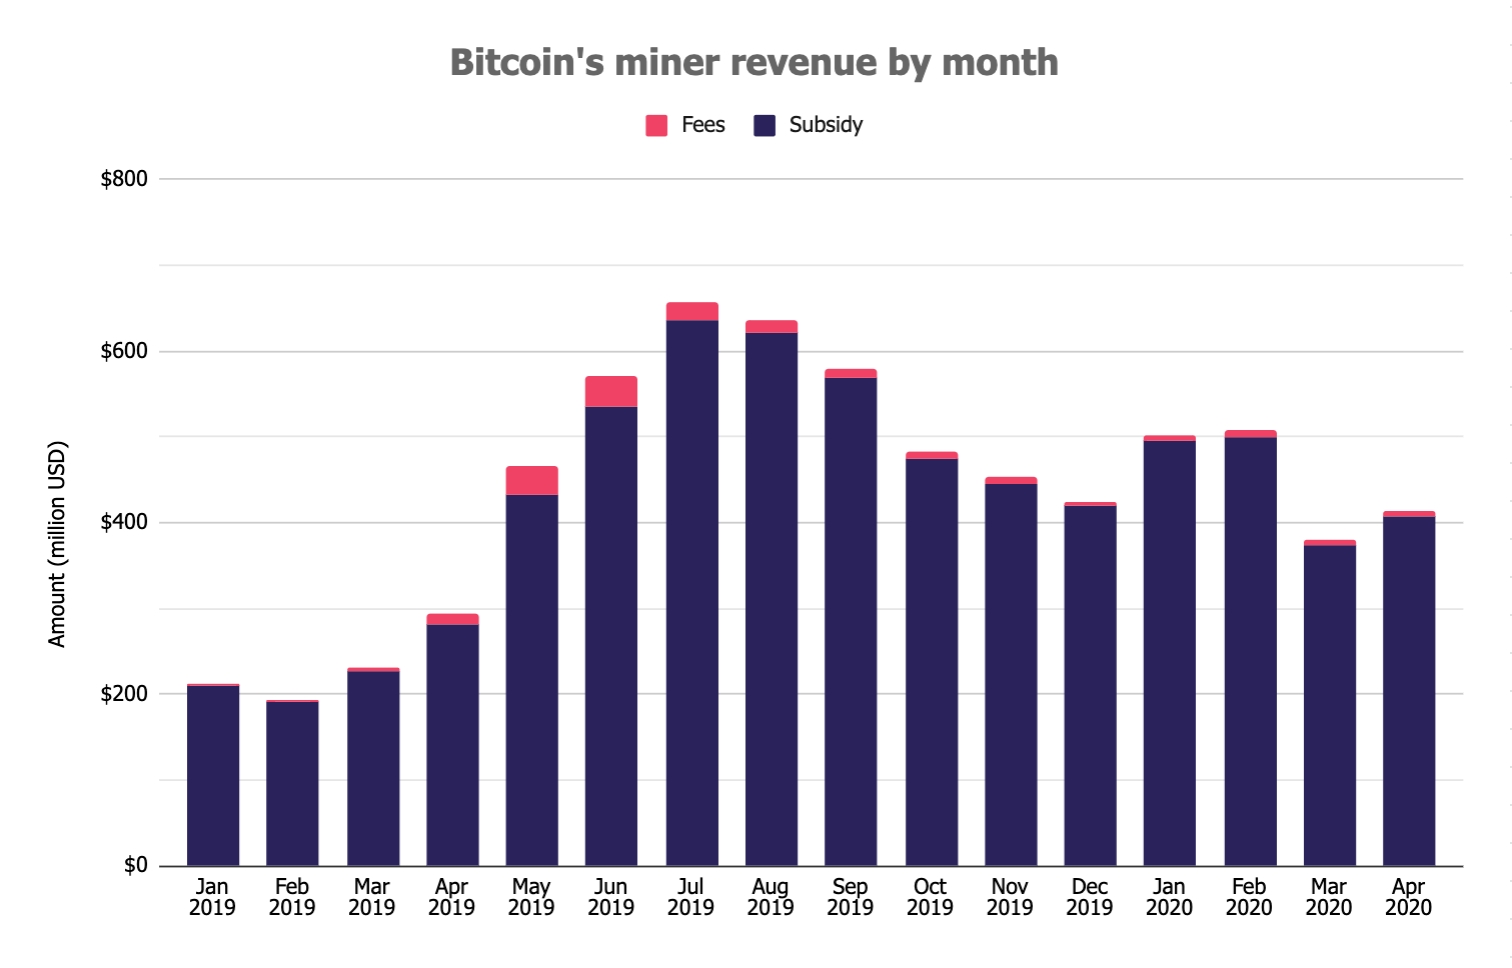 O lucro com a mineração de Bitcoin cresceu 8% no mês de abril em relação a março